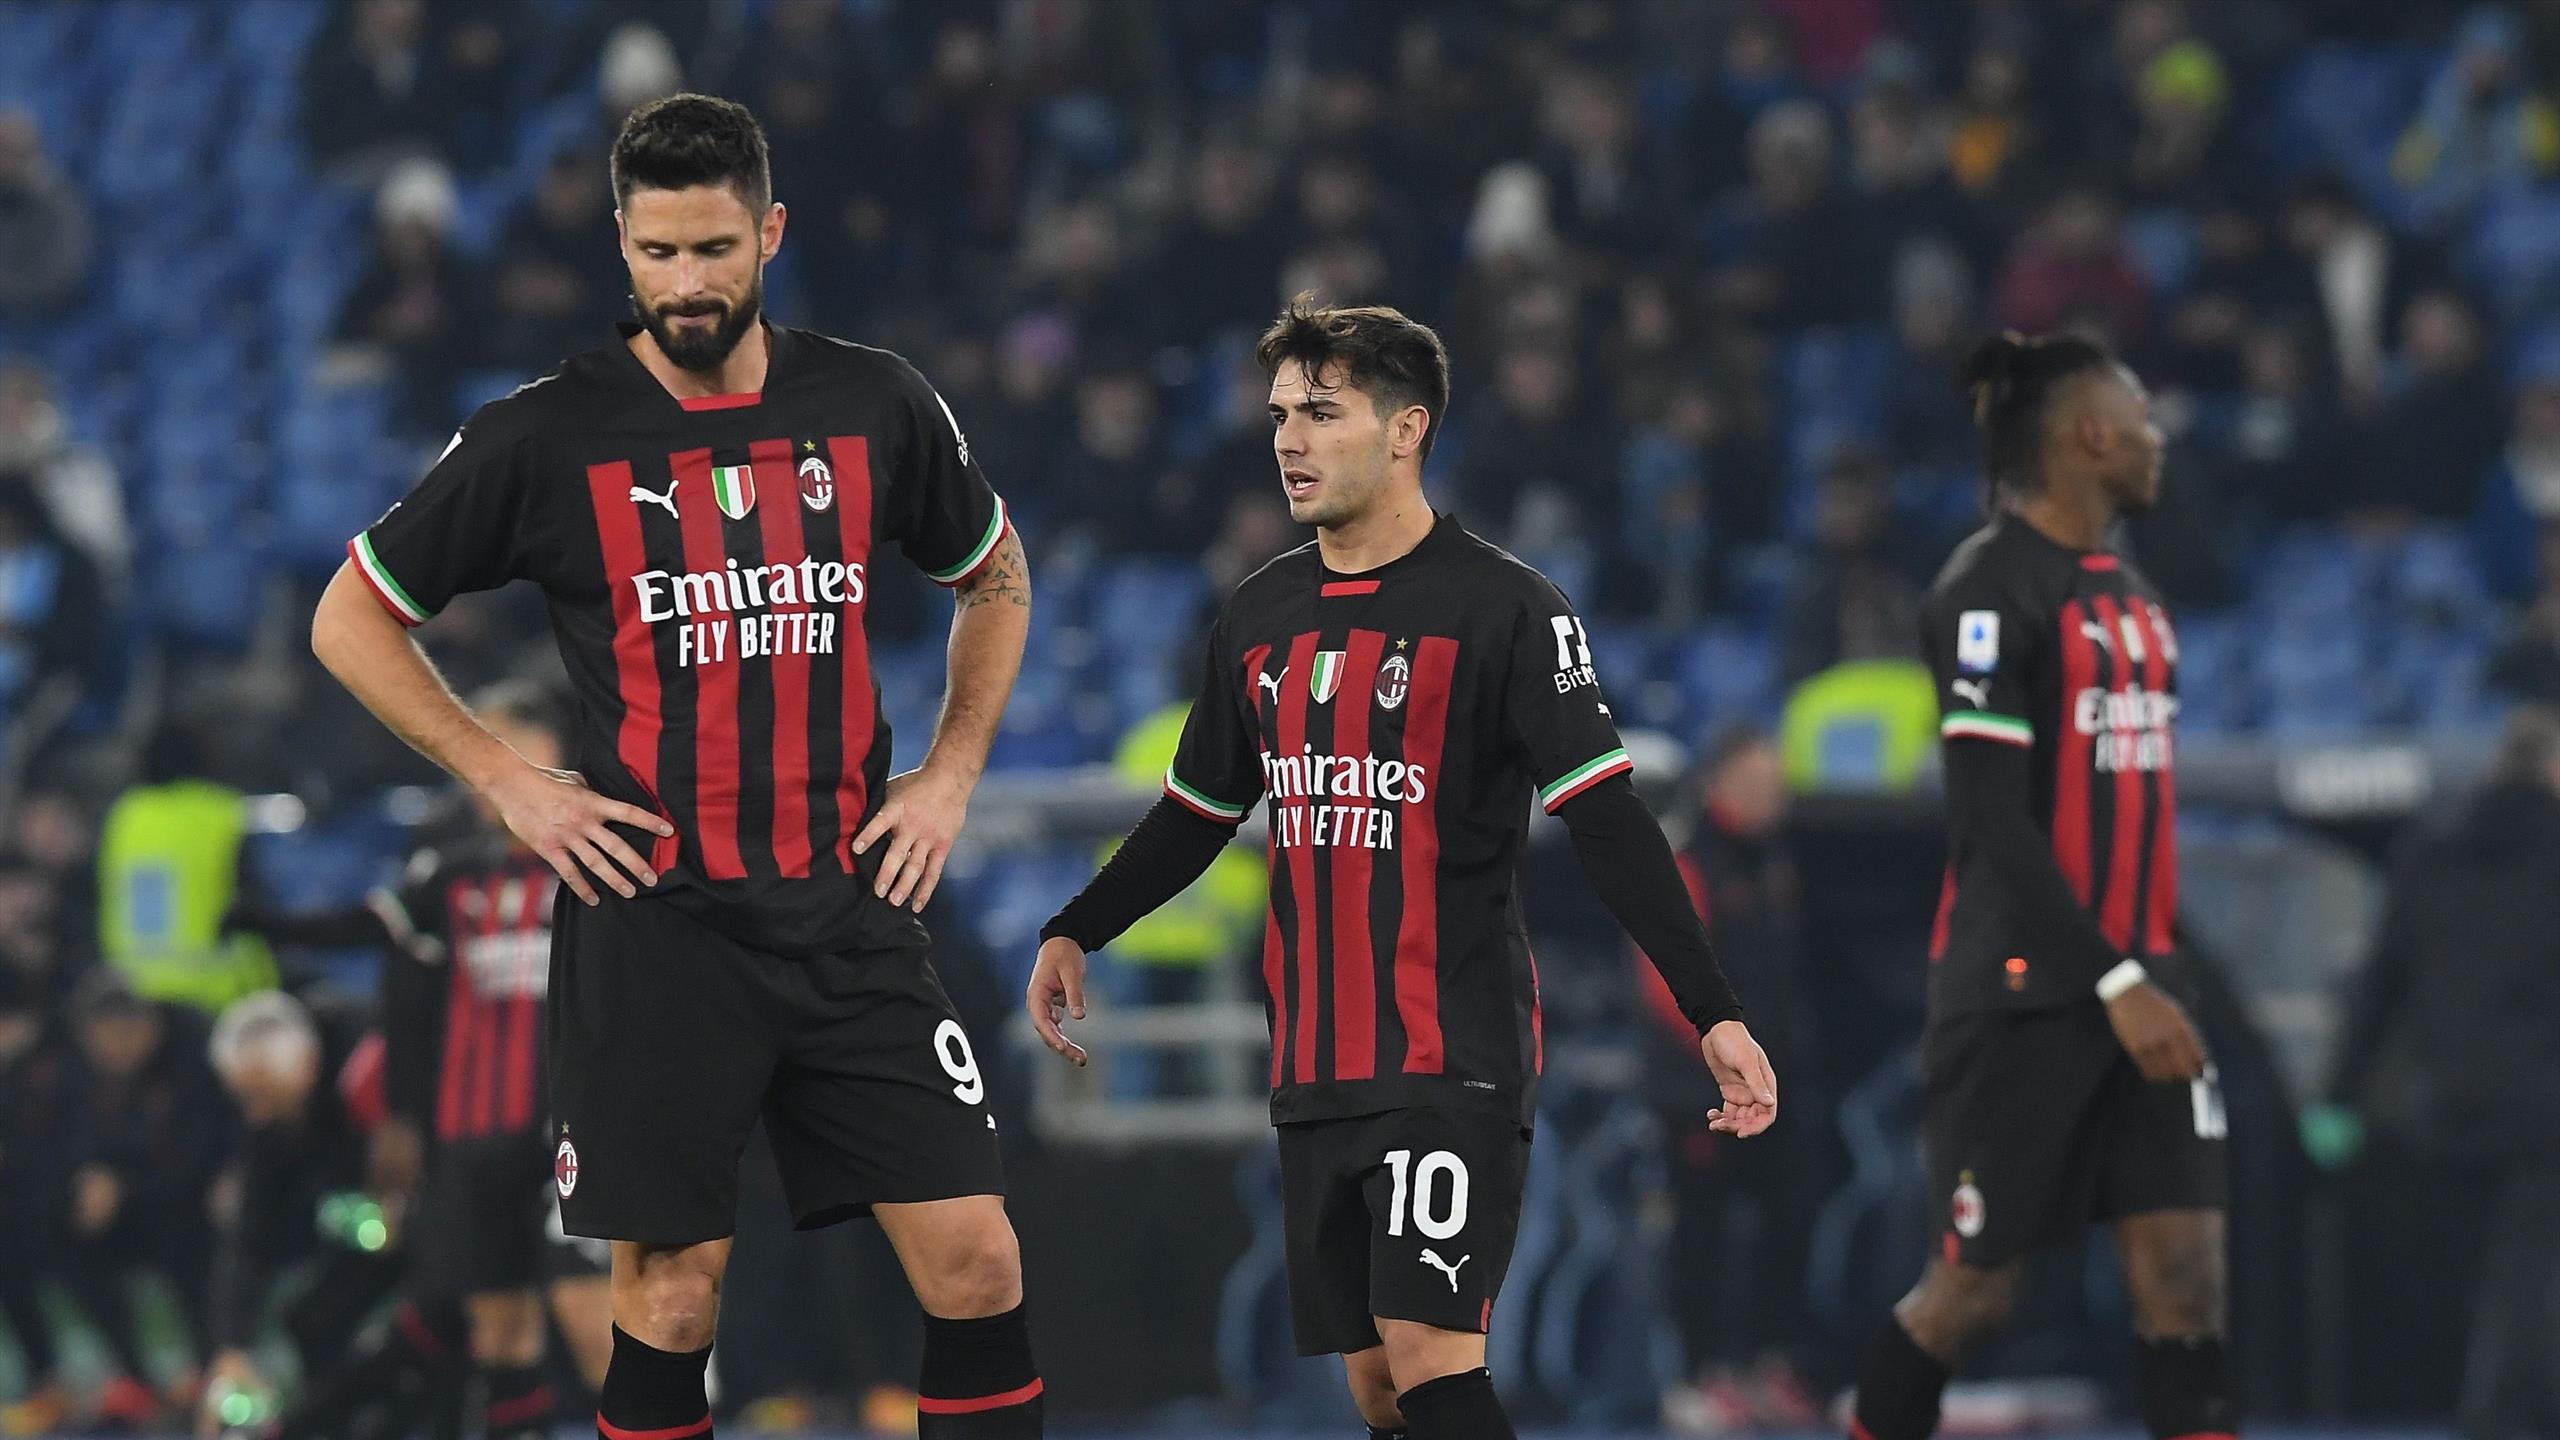 Милан – Сассуоло прогноз на матч Серии А 29 января 2023 года